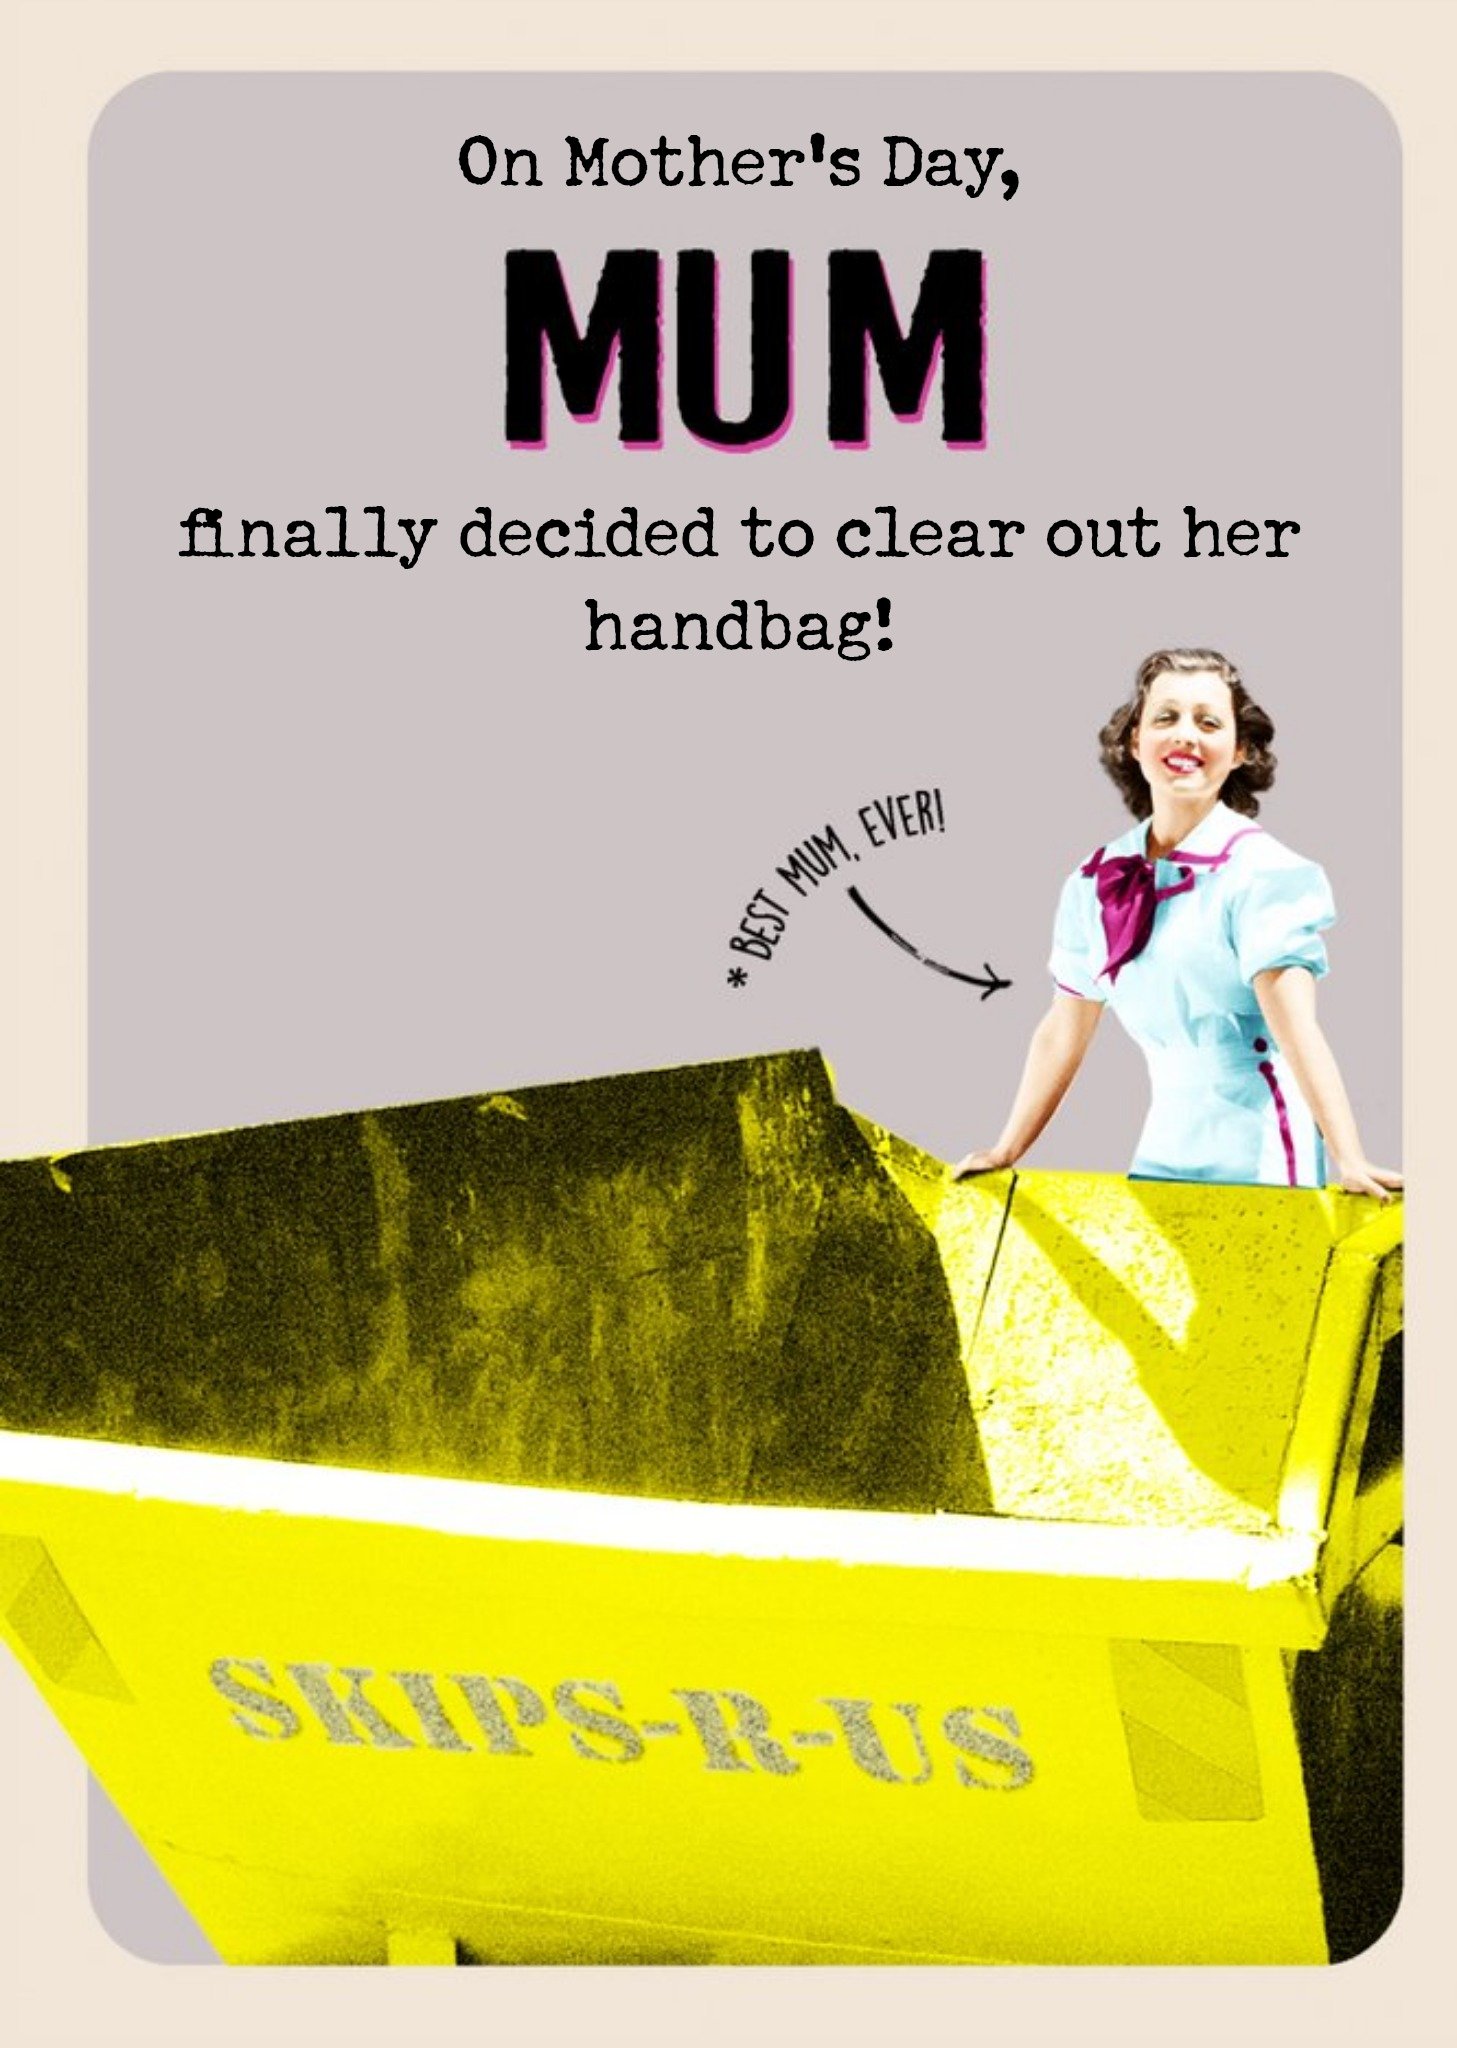 Moonpig Retro Mum Decided To Clean Out Her Handbag Card Ecard